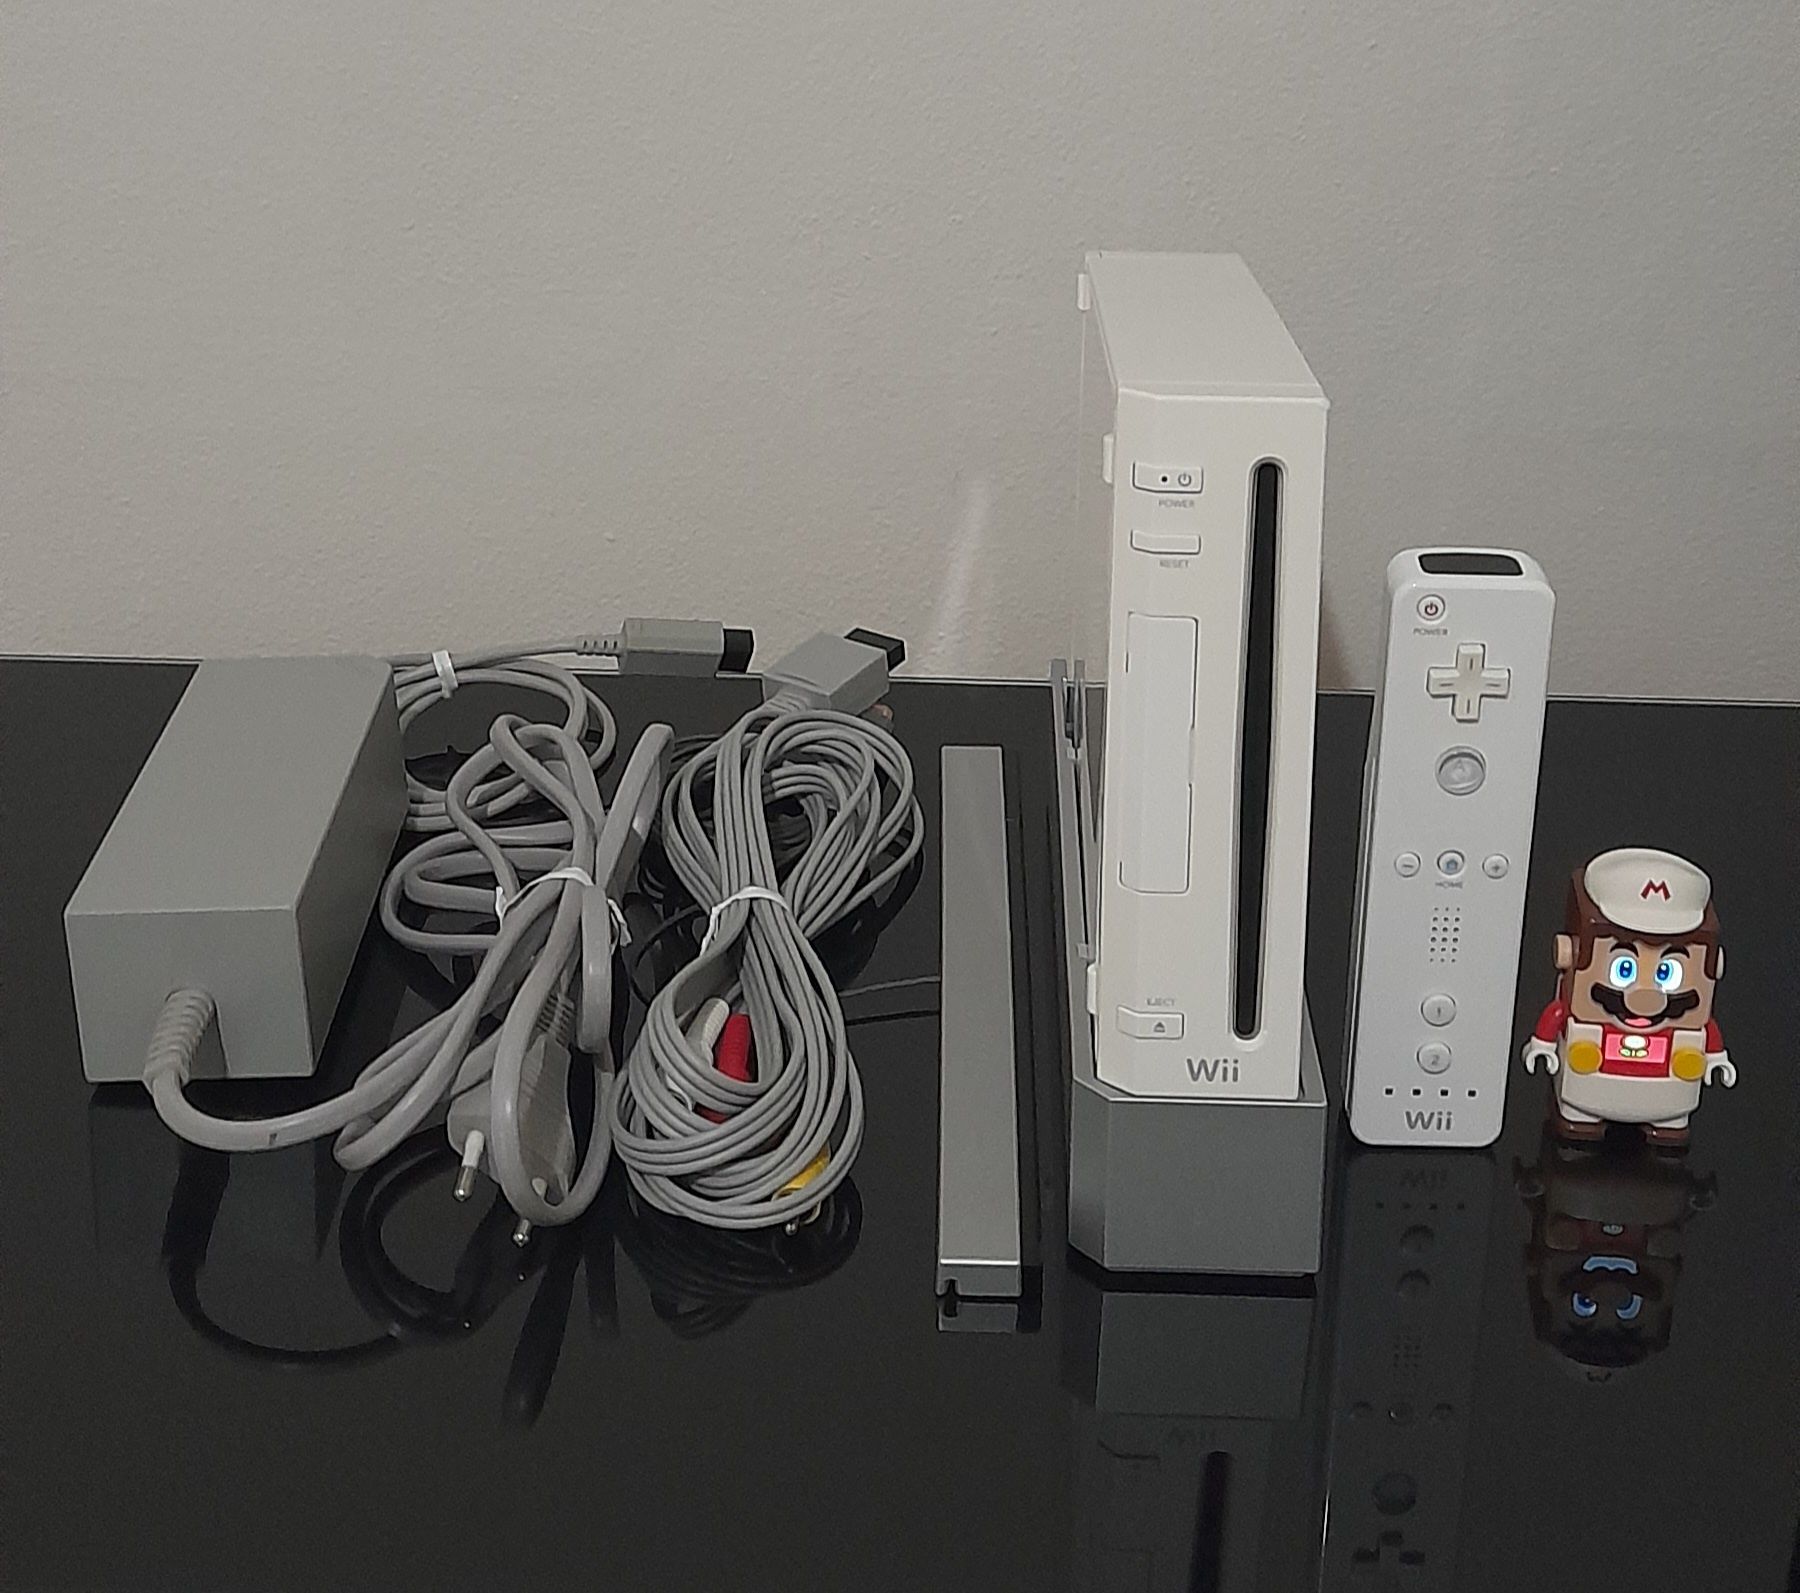 Consola Wii White Edition + Comando Wii (EXCELENTE ESTADO E COMPLETA)